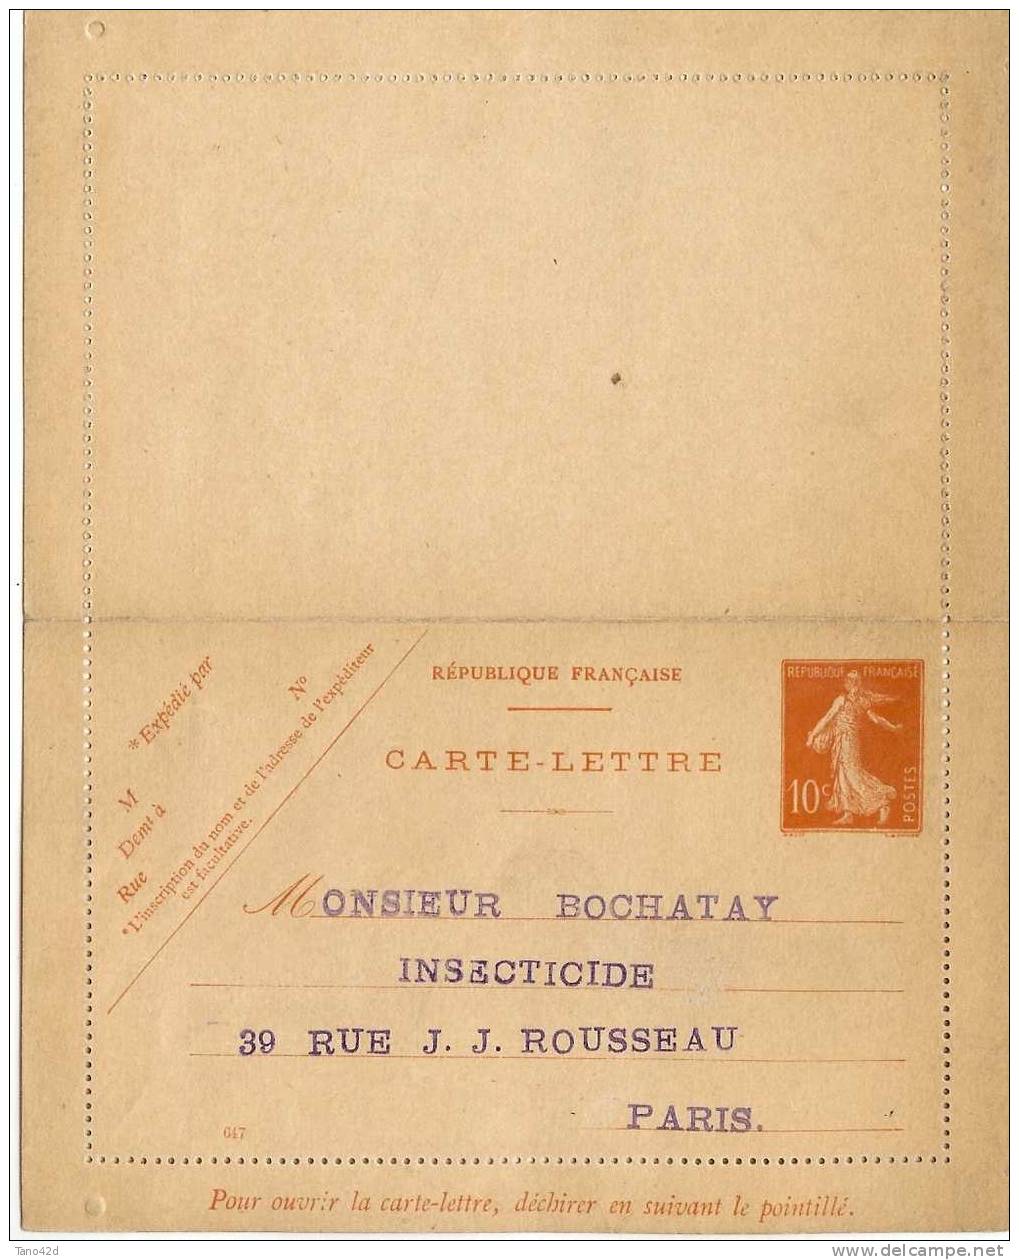 FRANCE - CARTE LETTRE TYPE SEMEUSE MAIGRE 10c REPIQUAGE M. BOCHATAY NEUVE - Letter Cards